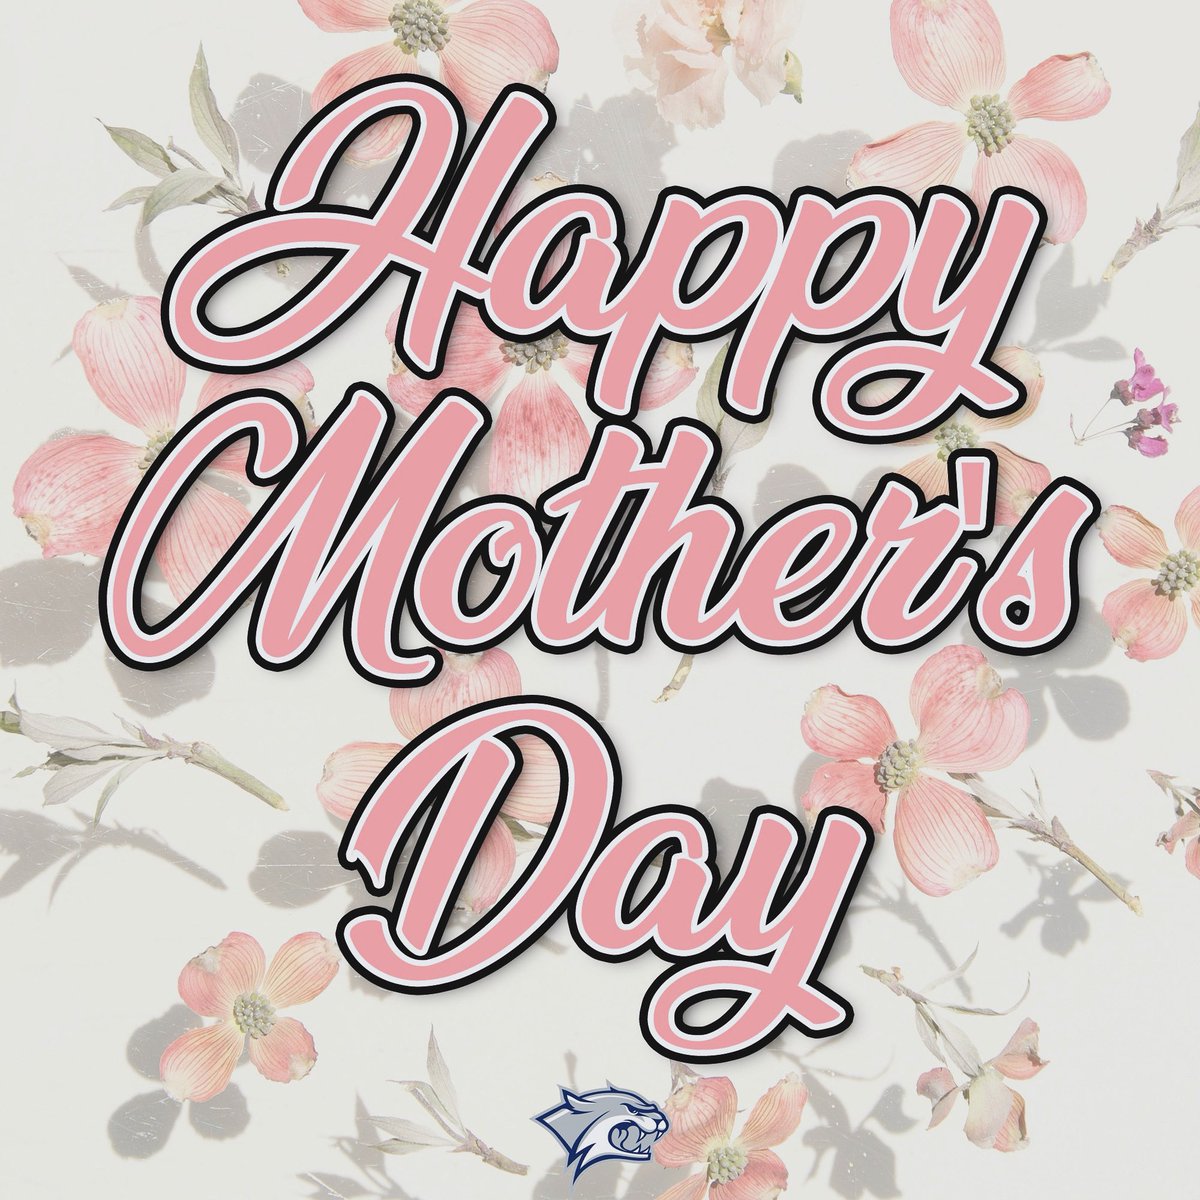 Happy Mother’s Day! #BeTheRoar